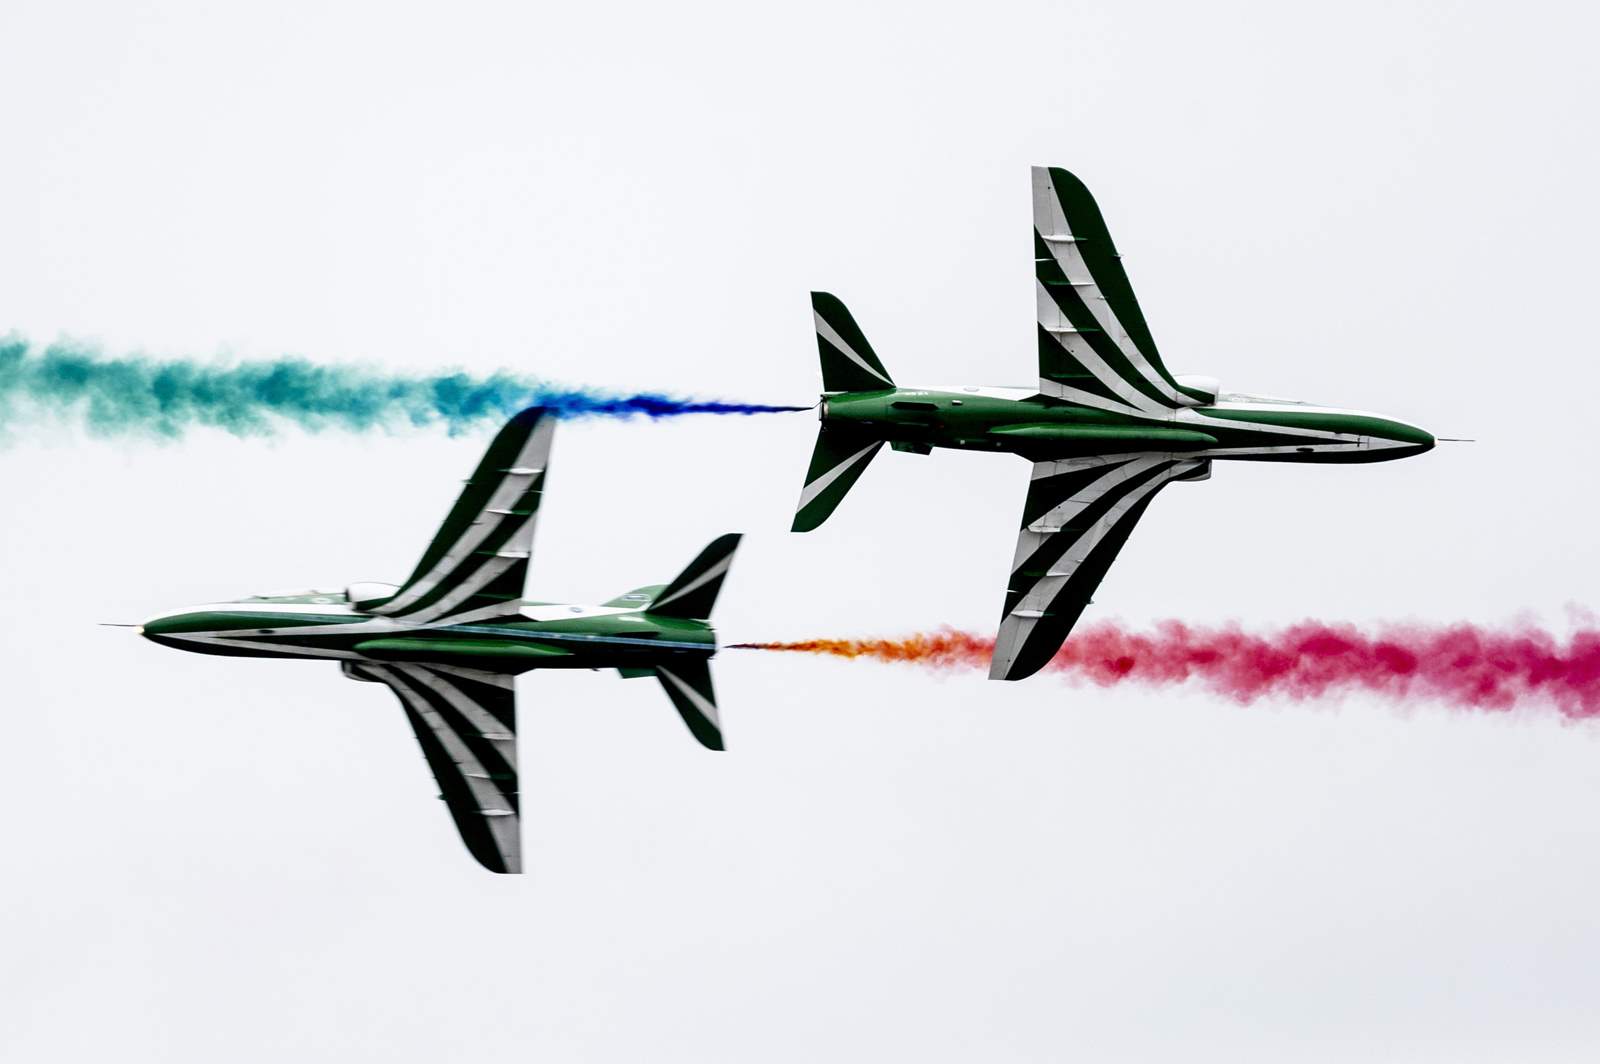 केस्केमेट, 2021 में अंतर्राष्ट्रीय एयर शो और सैन्य प्रदर्शन। फोटो एमटीआई